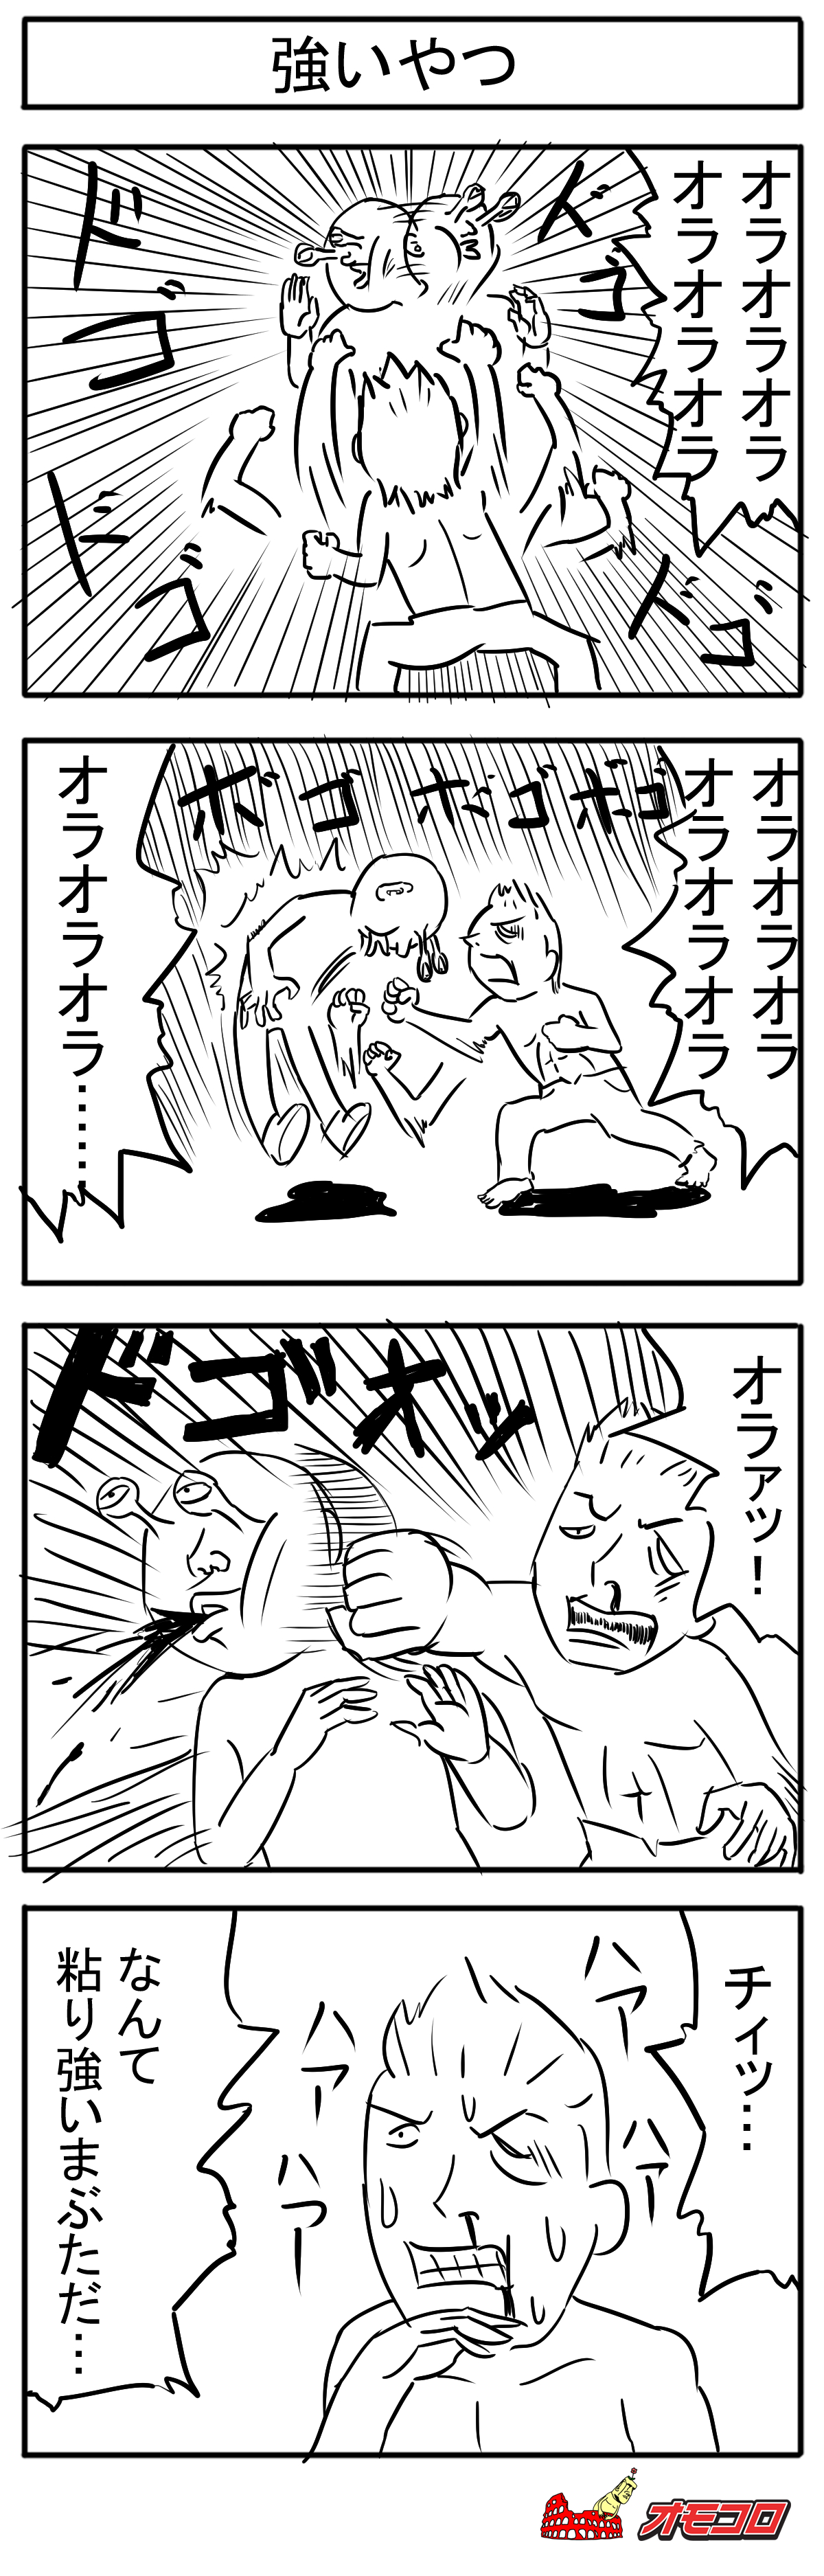 【4コマ漫画】強いやつ